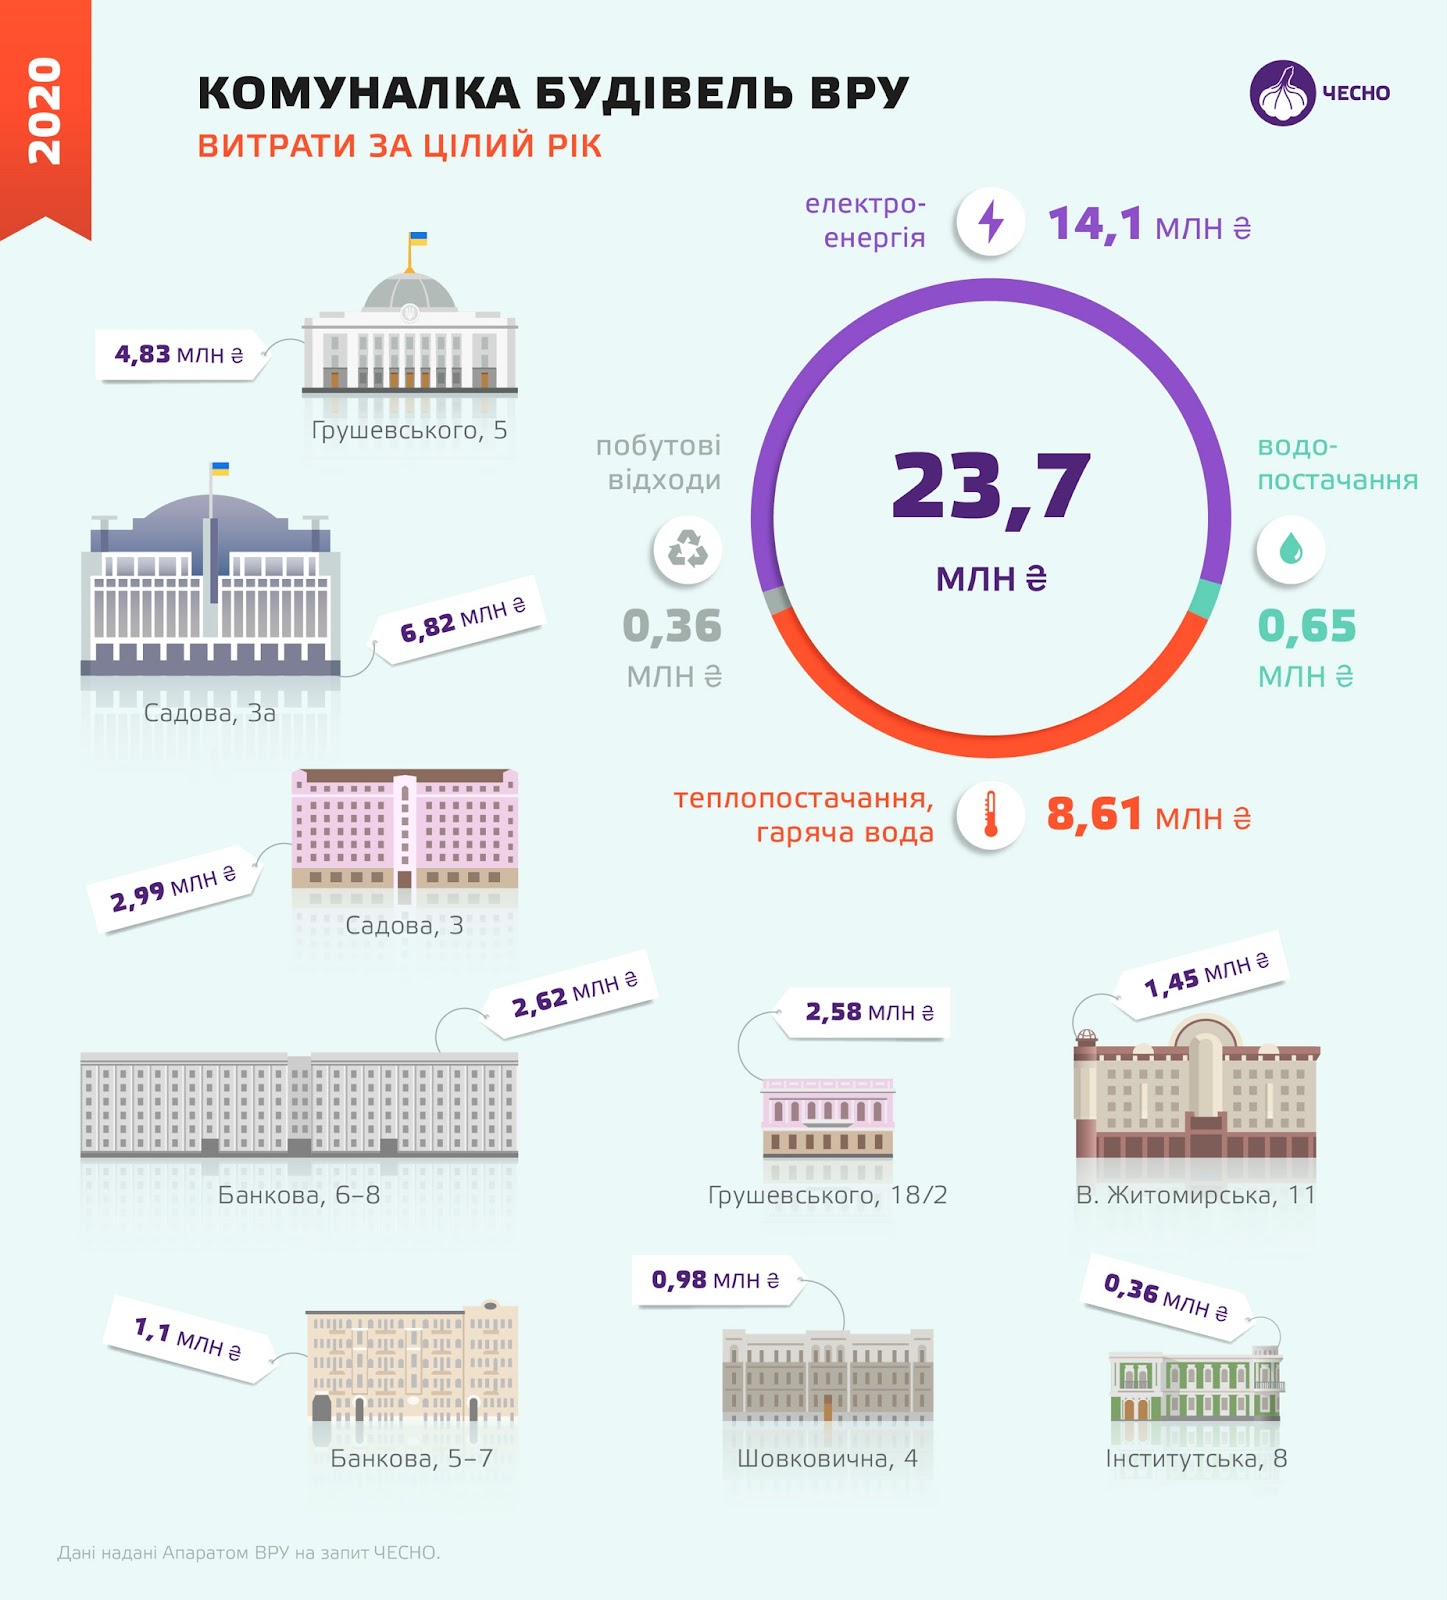 Коммунальные платежи всех зданий Верховной Рады Украины за целый год